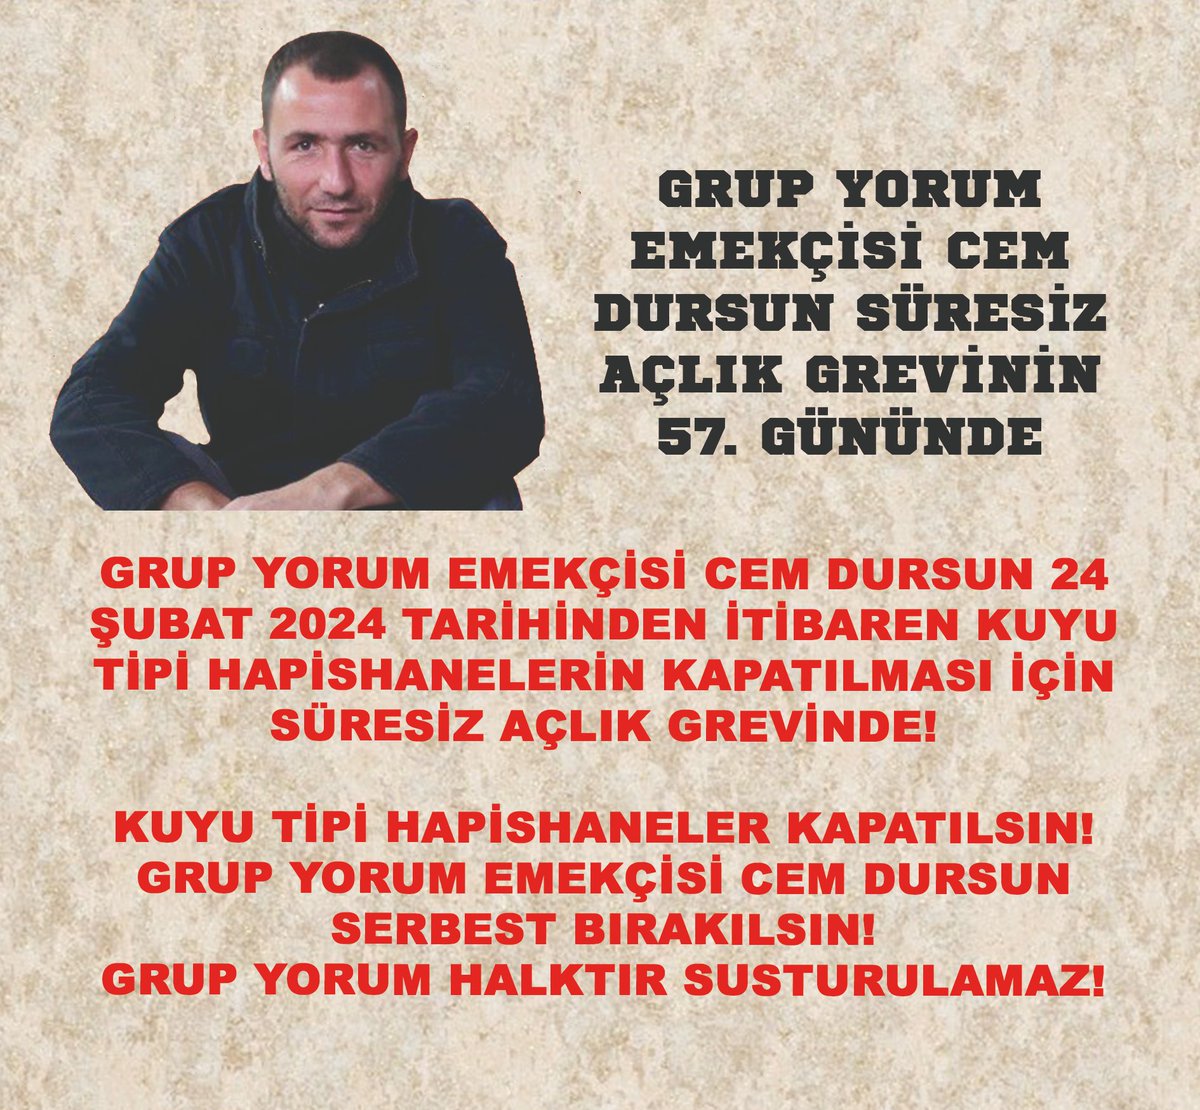 Grup Yorum Emekçisi Cem Dursun Süresiz Açlık Grevinin 57. gününde. Y-R-S Tipi Hapishaneler Kapatılsın! #GrupYorumhalktırsusturulamaz